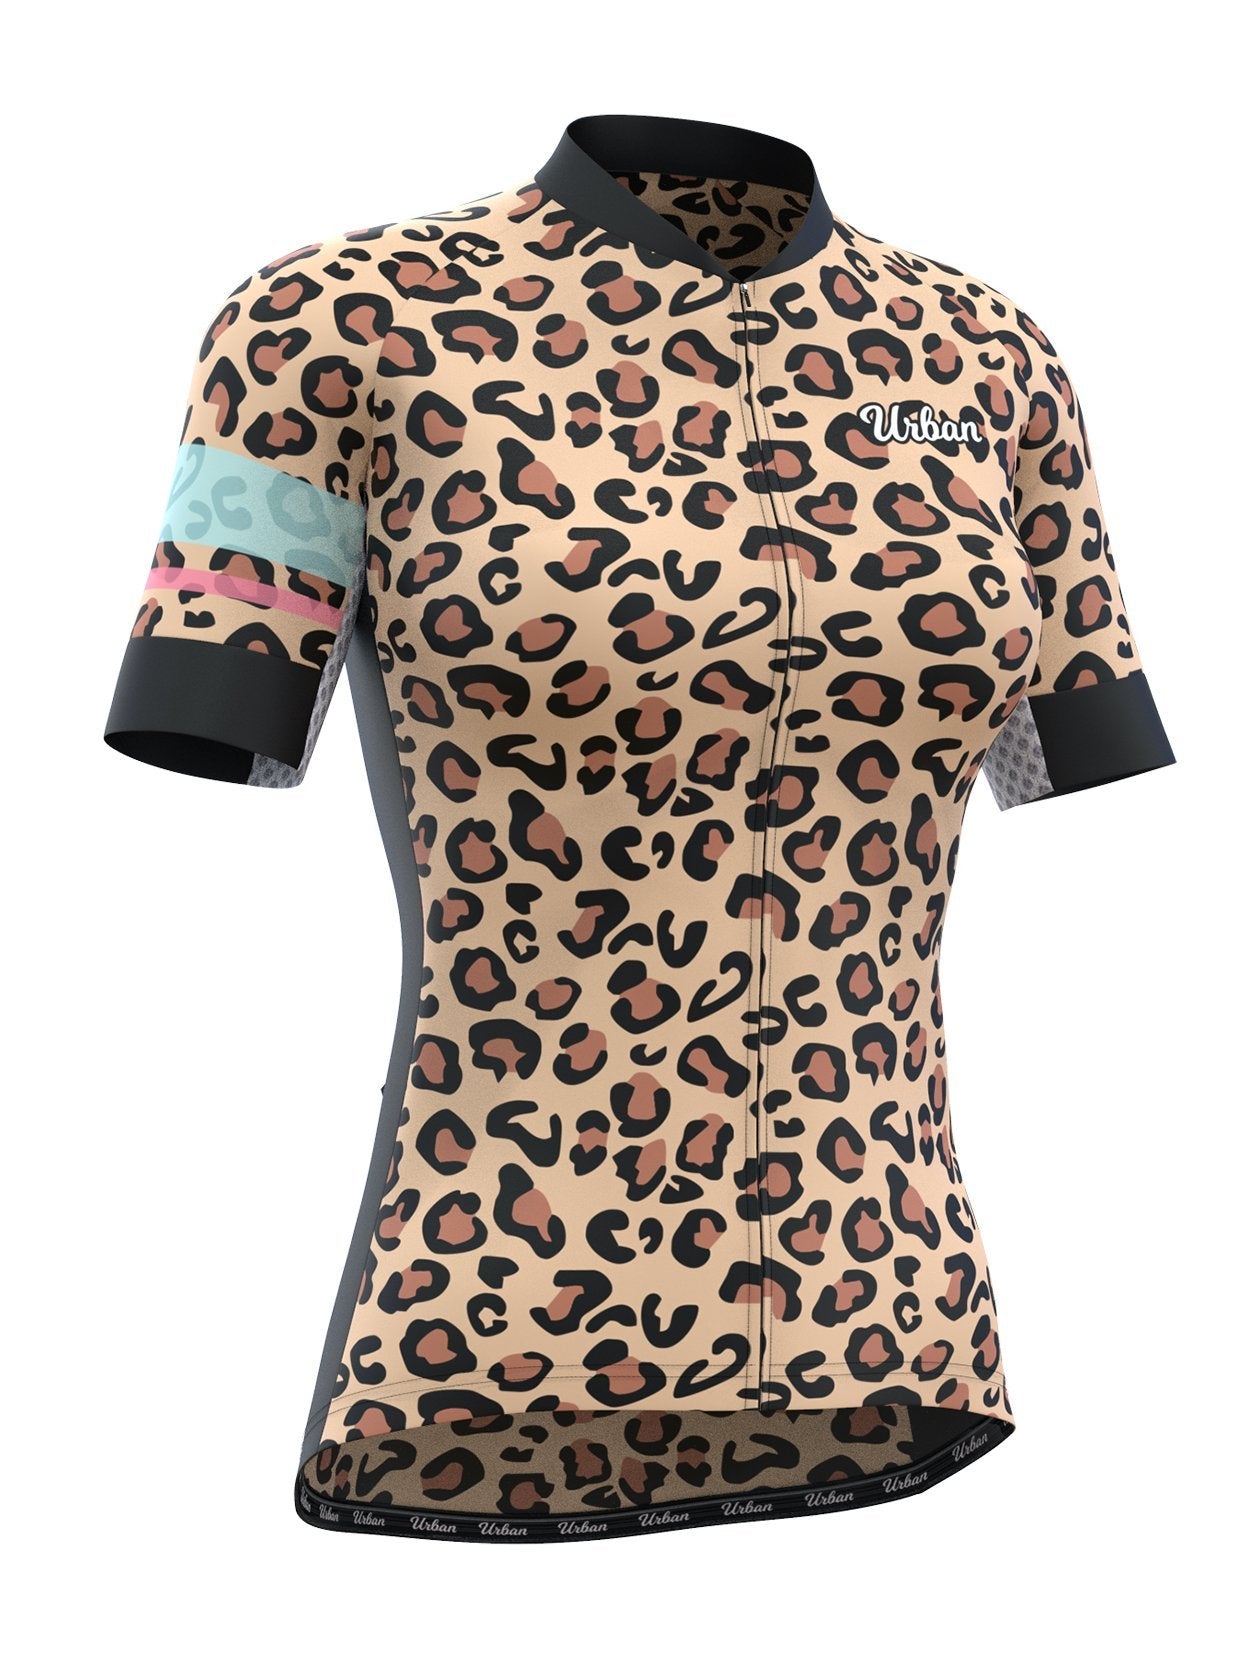 Leopard Sizewomen's Leopard Print 2-piece Set - Zippered Top